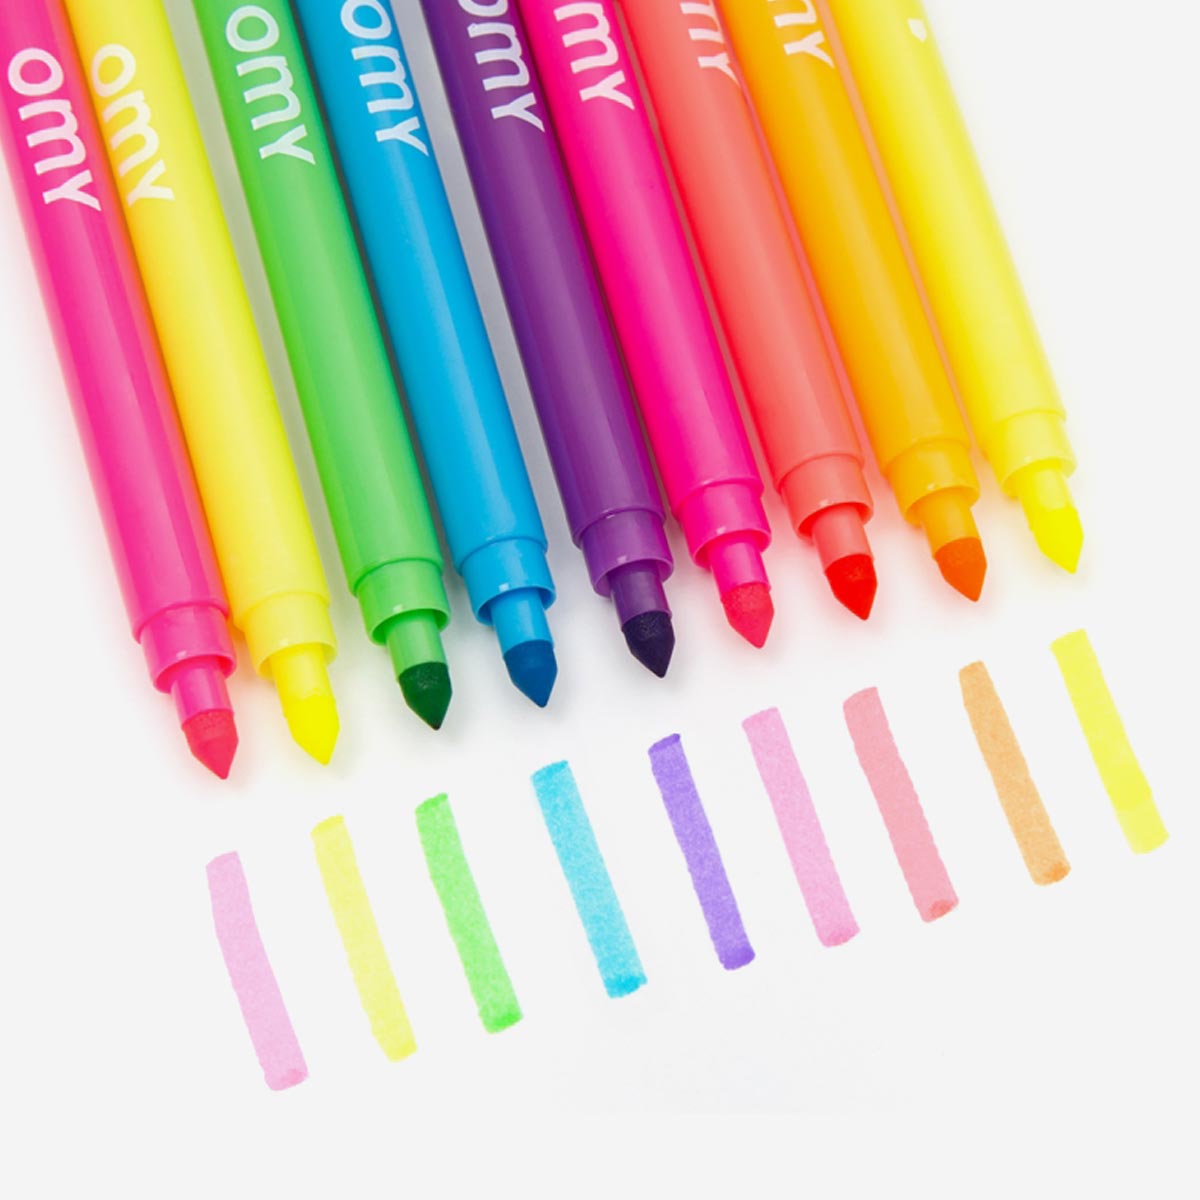 10 Magic felt pens